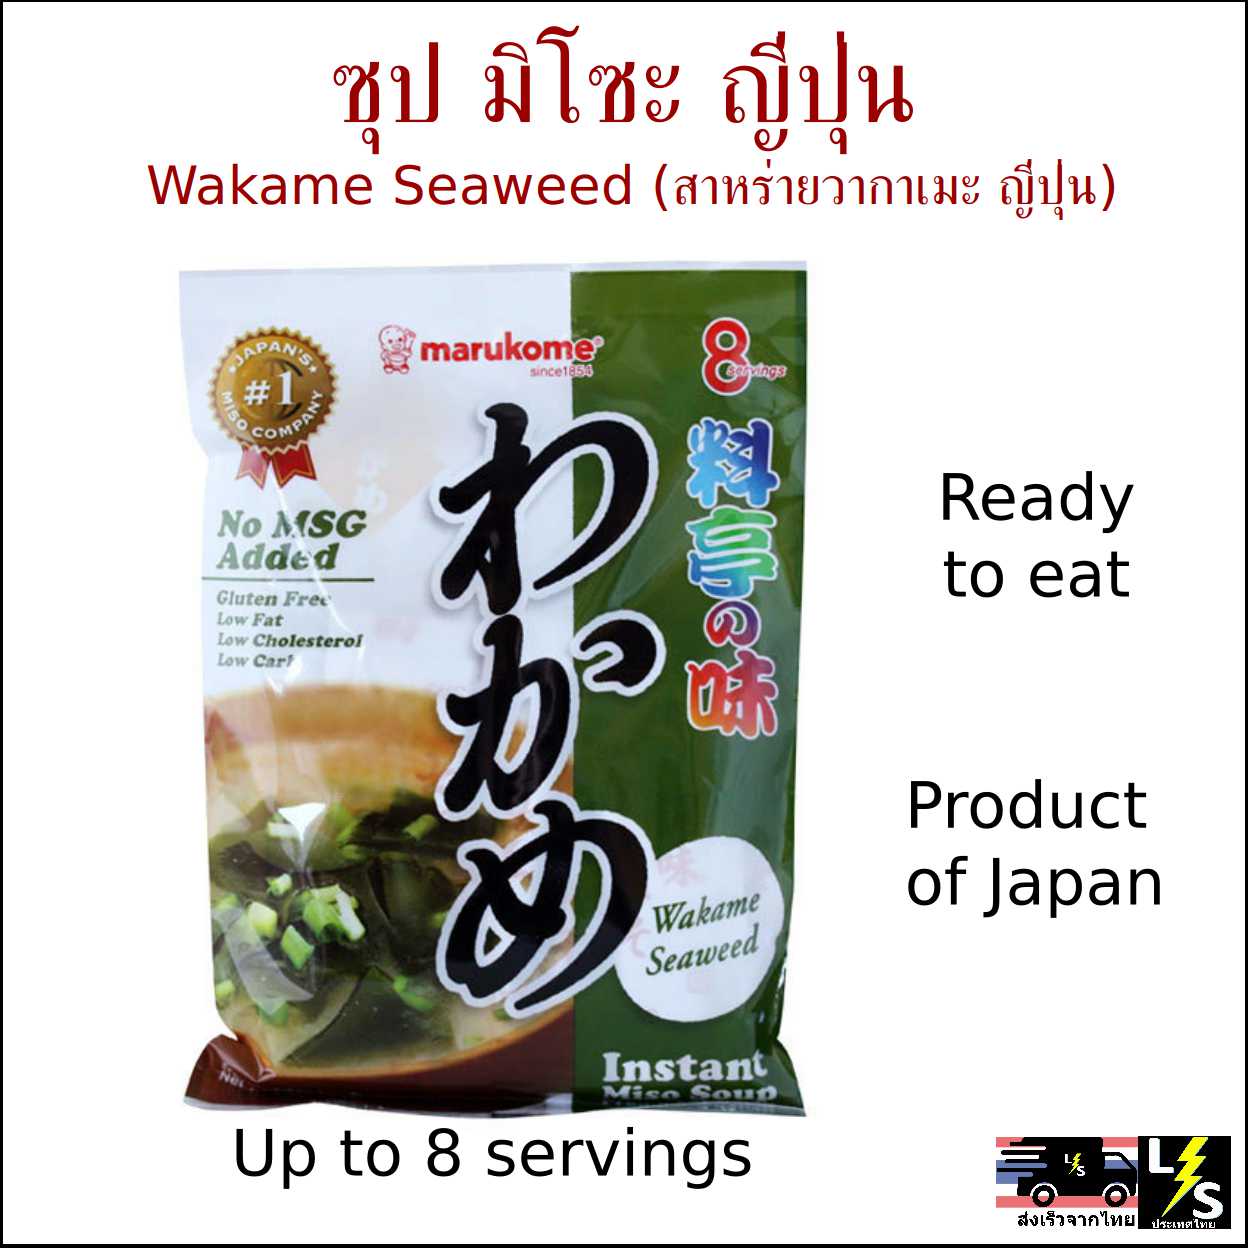 ซุป มิโซะ สาหร่ายวากาเมะ ญี่ปุ่น พร้อมรับประทาน [ส่งจากไทย] -- อาหารสำเร็จรูป ซุปมิโซะพร้อมรับประทาน สาหร่าย วากาเมะ Japanese Miso Soup Wakame Seaweed Instant Ready to Cook Eat